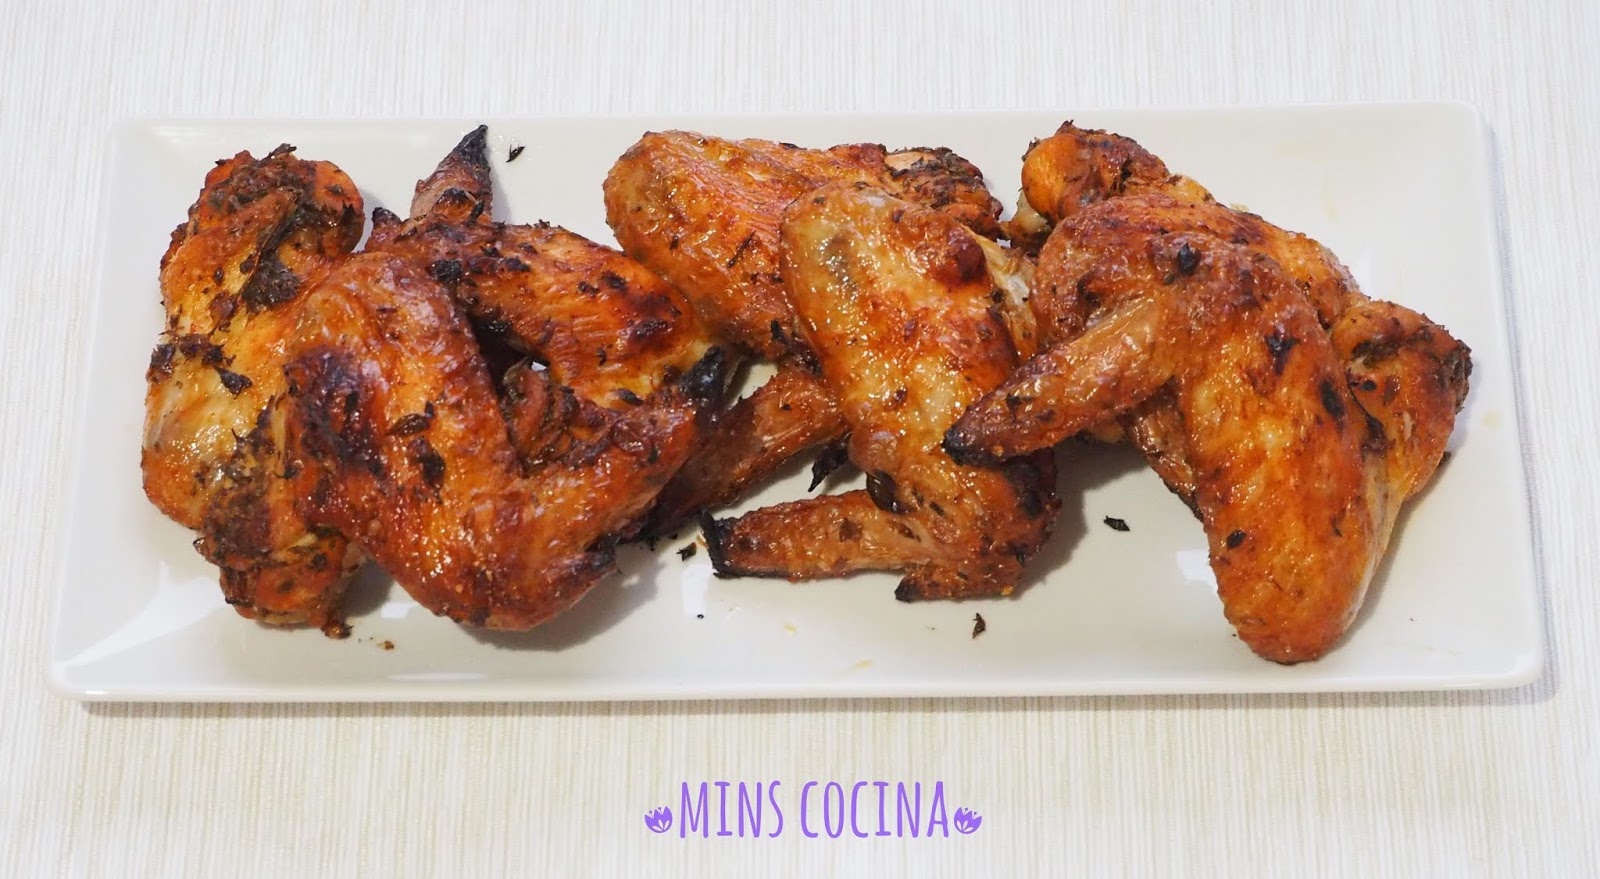 Mins Cocina: Alitas de pollo adobadas al horno